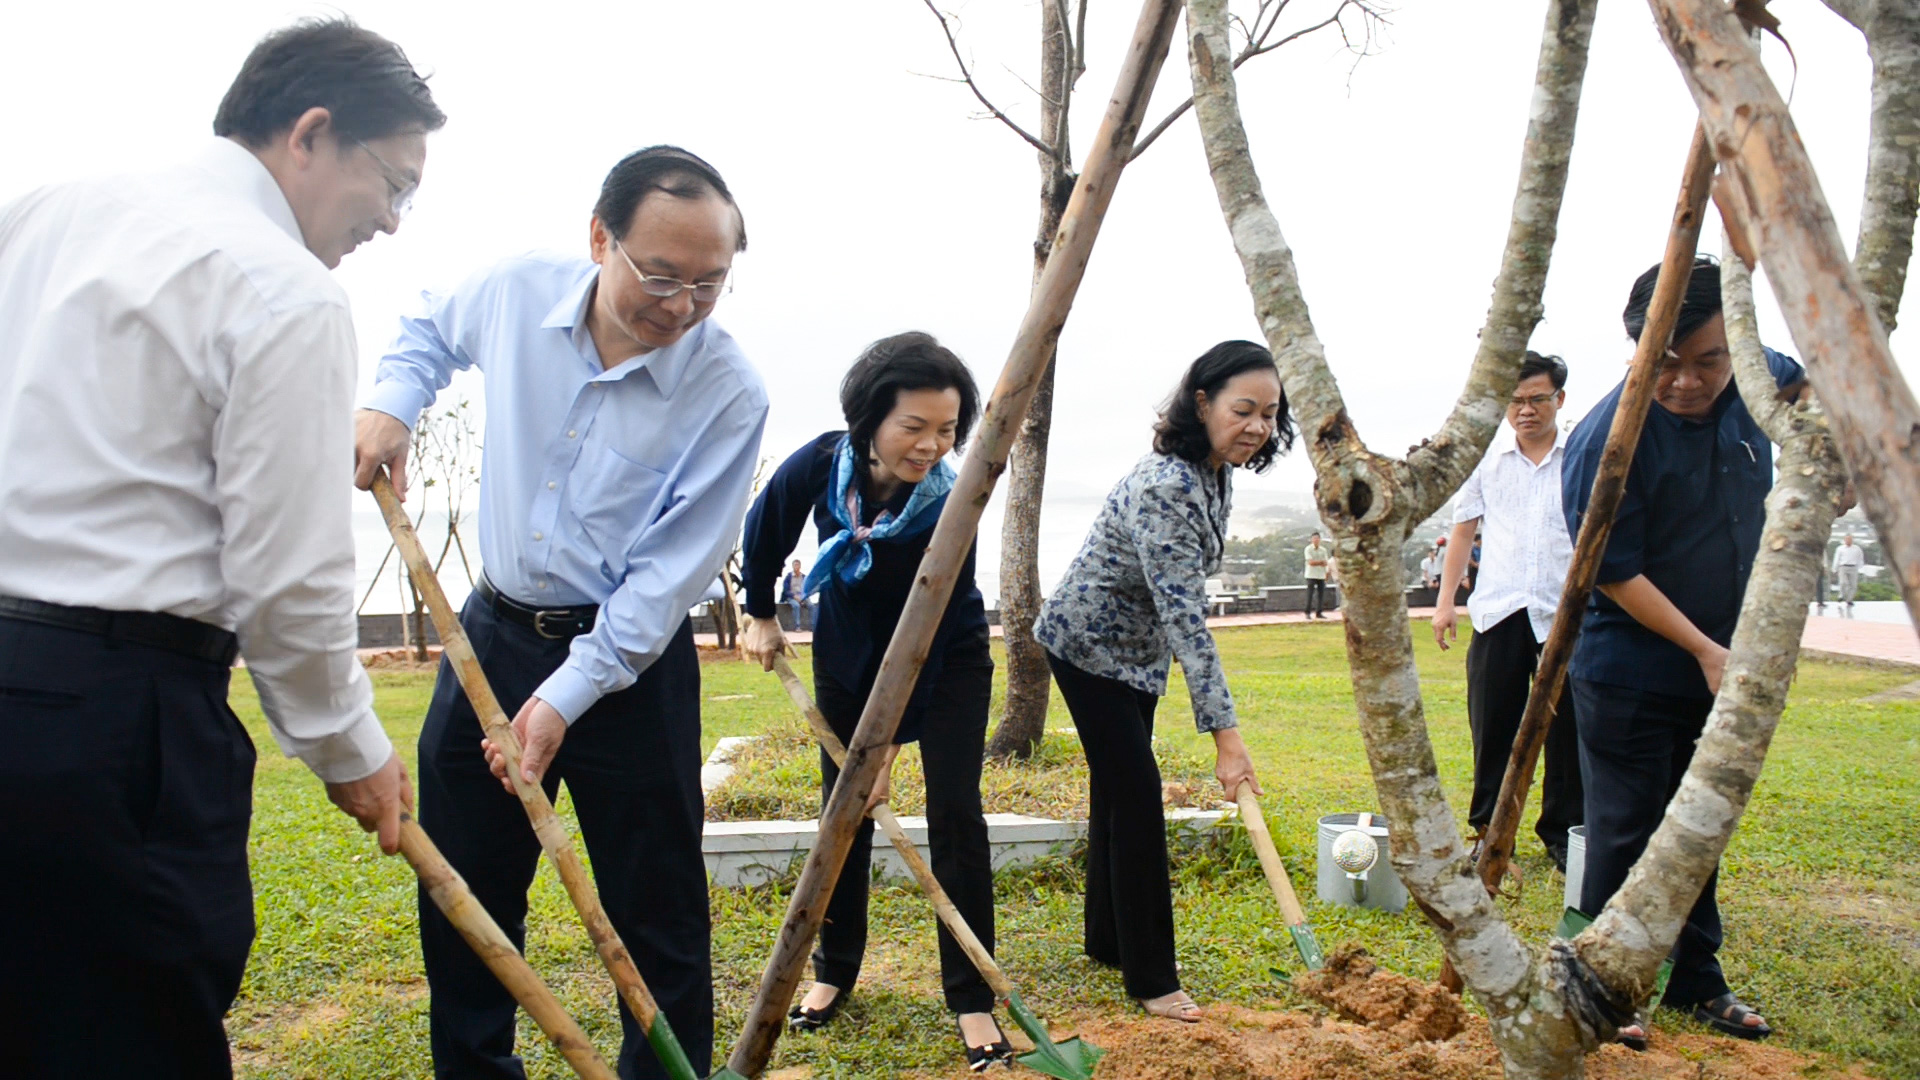 Vinamilk cùng quỹ 1 triệu cây xanh cho Việt Nam trồng cây góp phần chống biến đổi khí hậu tại tỉnh Bình Định